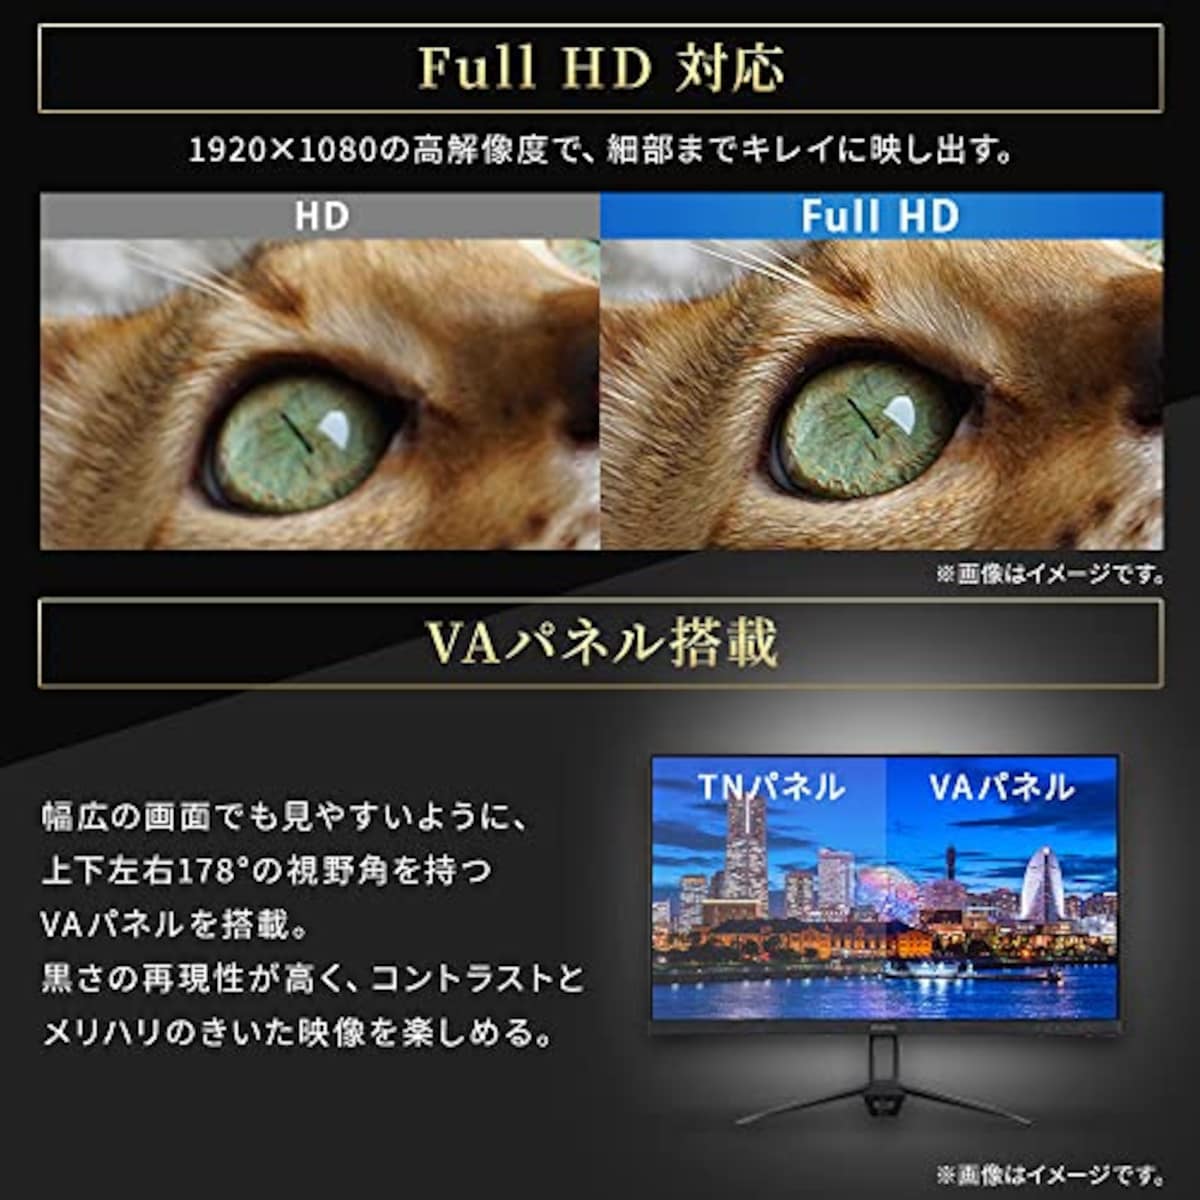  【Amazon.co.jp限定】アイリスオーヤマ モニター 24インチ (メーカー3年保証) スピーカー内蔵 VAパネル HDMI×1 VGA×1 DC IN×1 AUDIO OUT×1 角度調整可能 FHD 1920x1080 60Hz 8ms ブルーライト軽減 フレームレス VESA対応 壁掛け ディスプレイ pcモニター 液晶モニター DT-FF233S-B画像4 